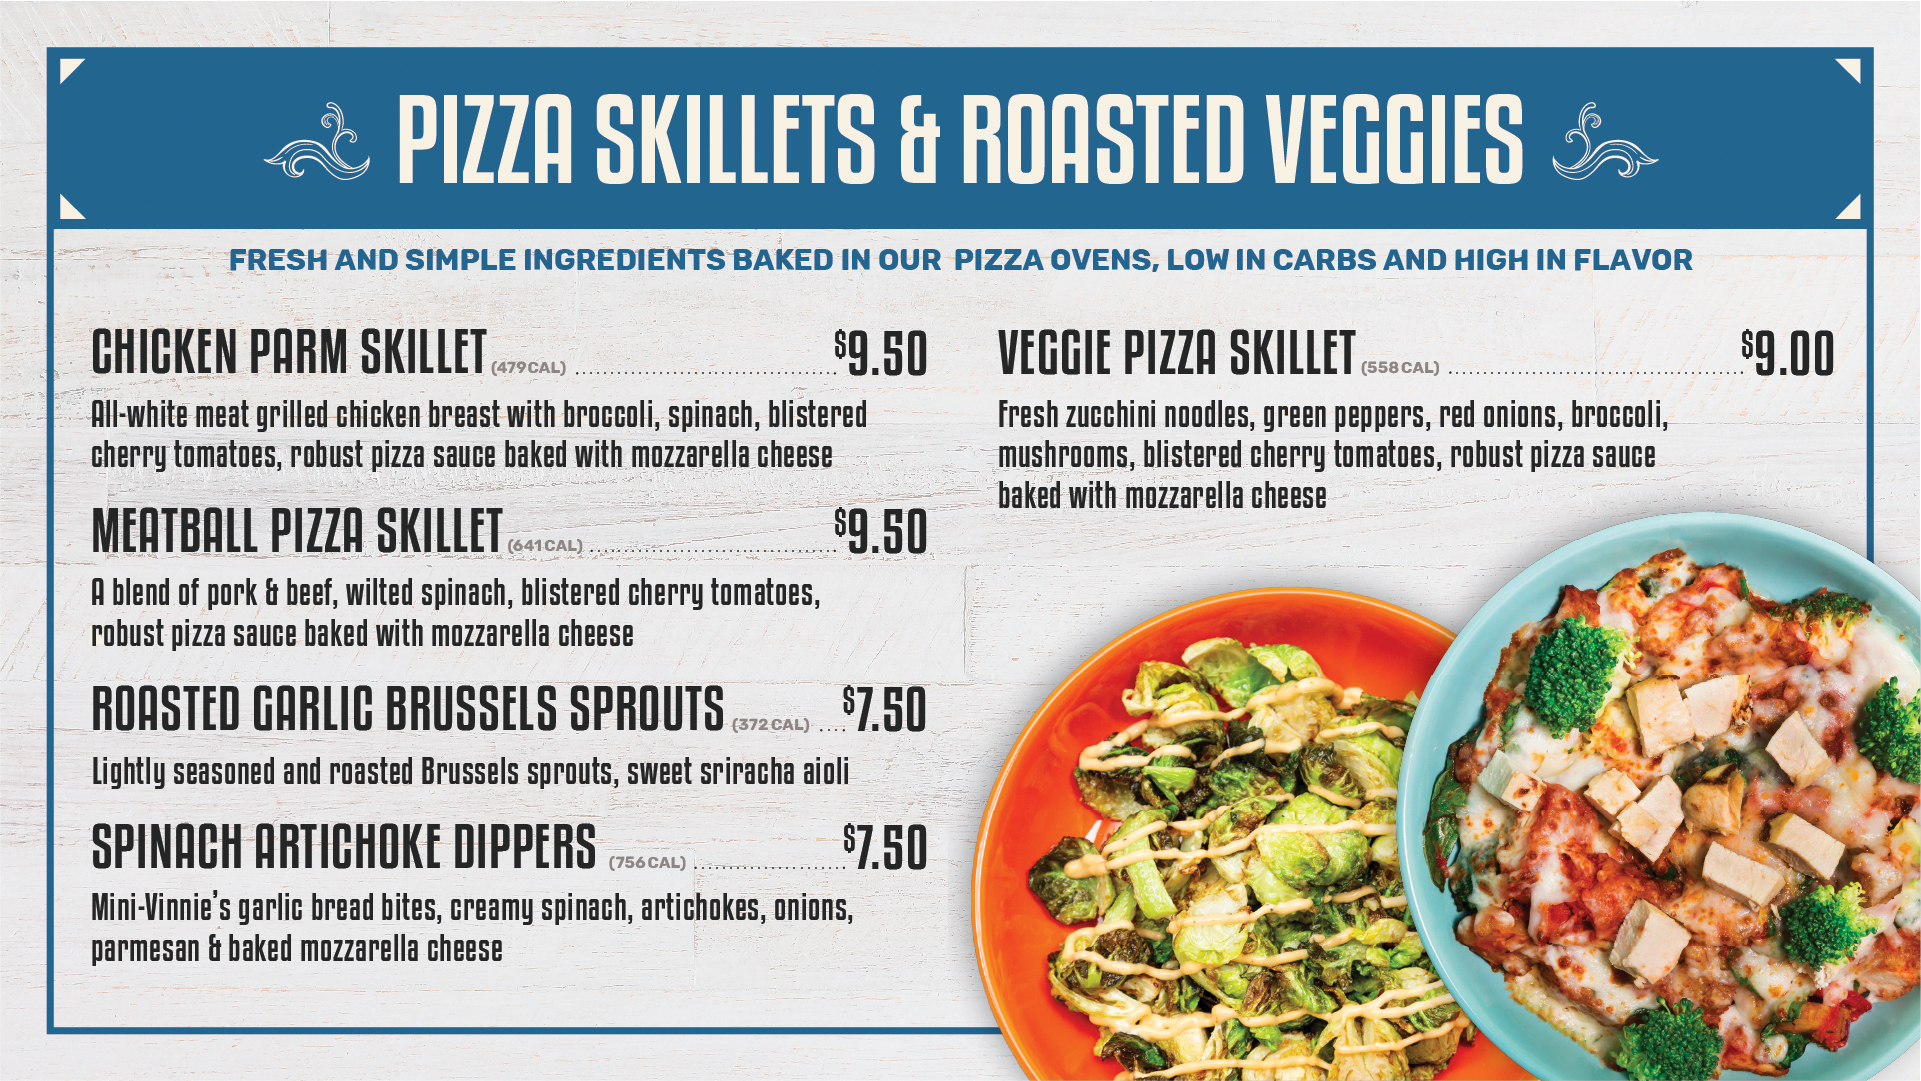 Pizza skillets & roasted veggies